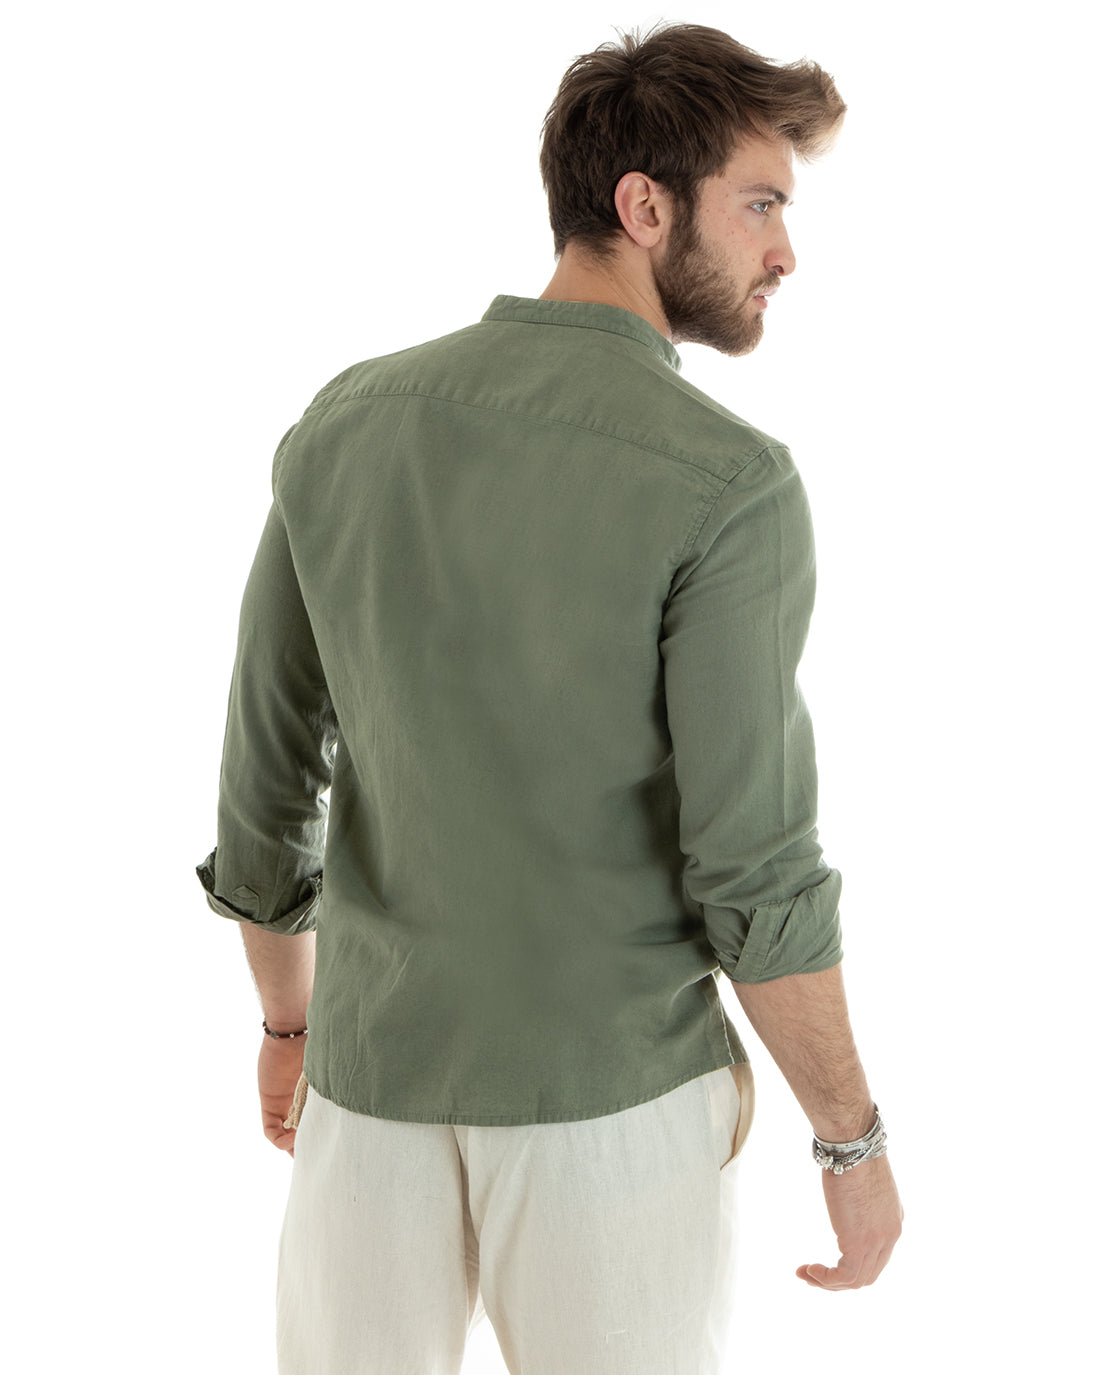 Camicia Uomo Collo Coreano Manica Lunga Lino Tinta Unita Sartoriale Verde Militare GIOSAL-C2666A